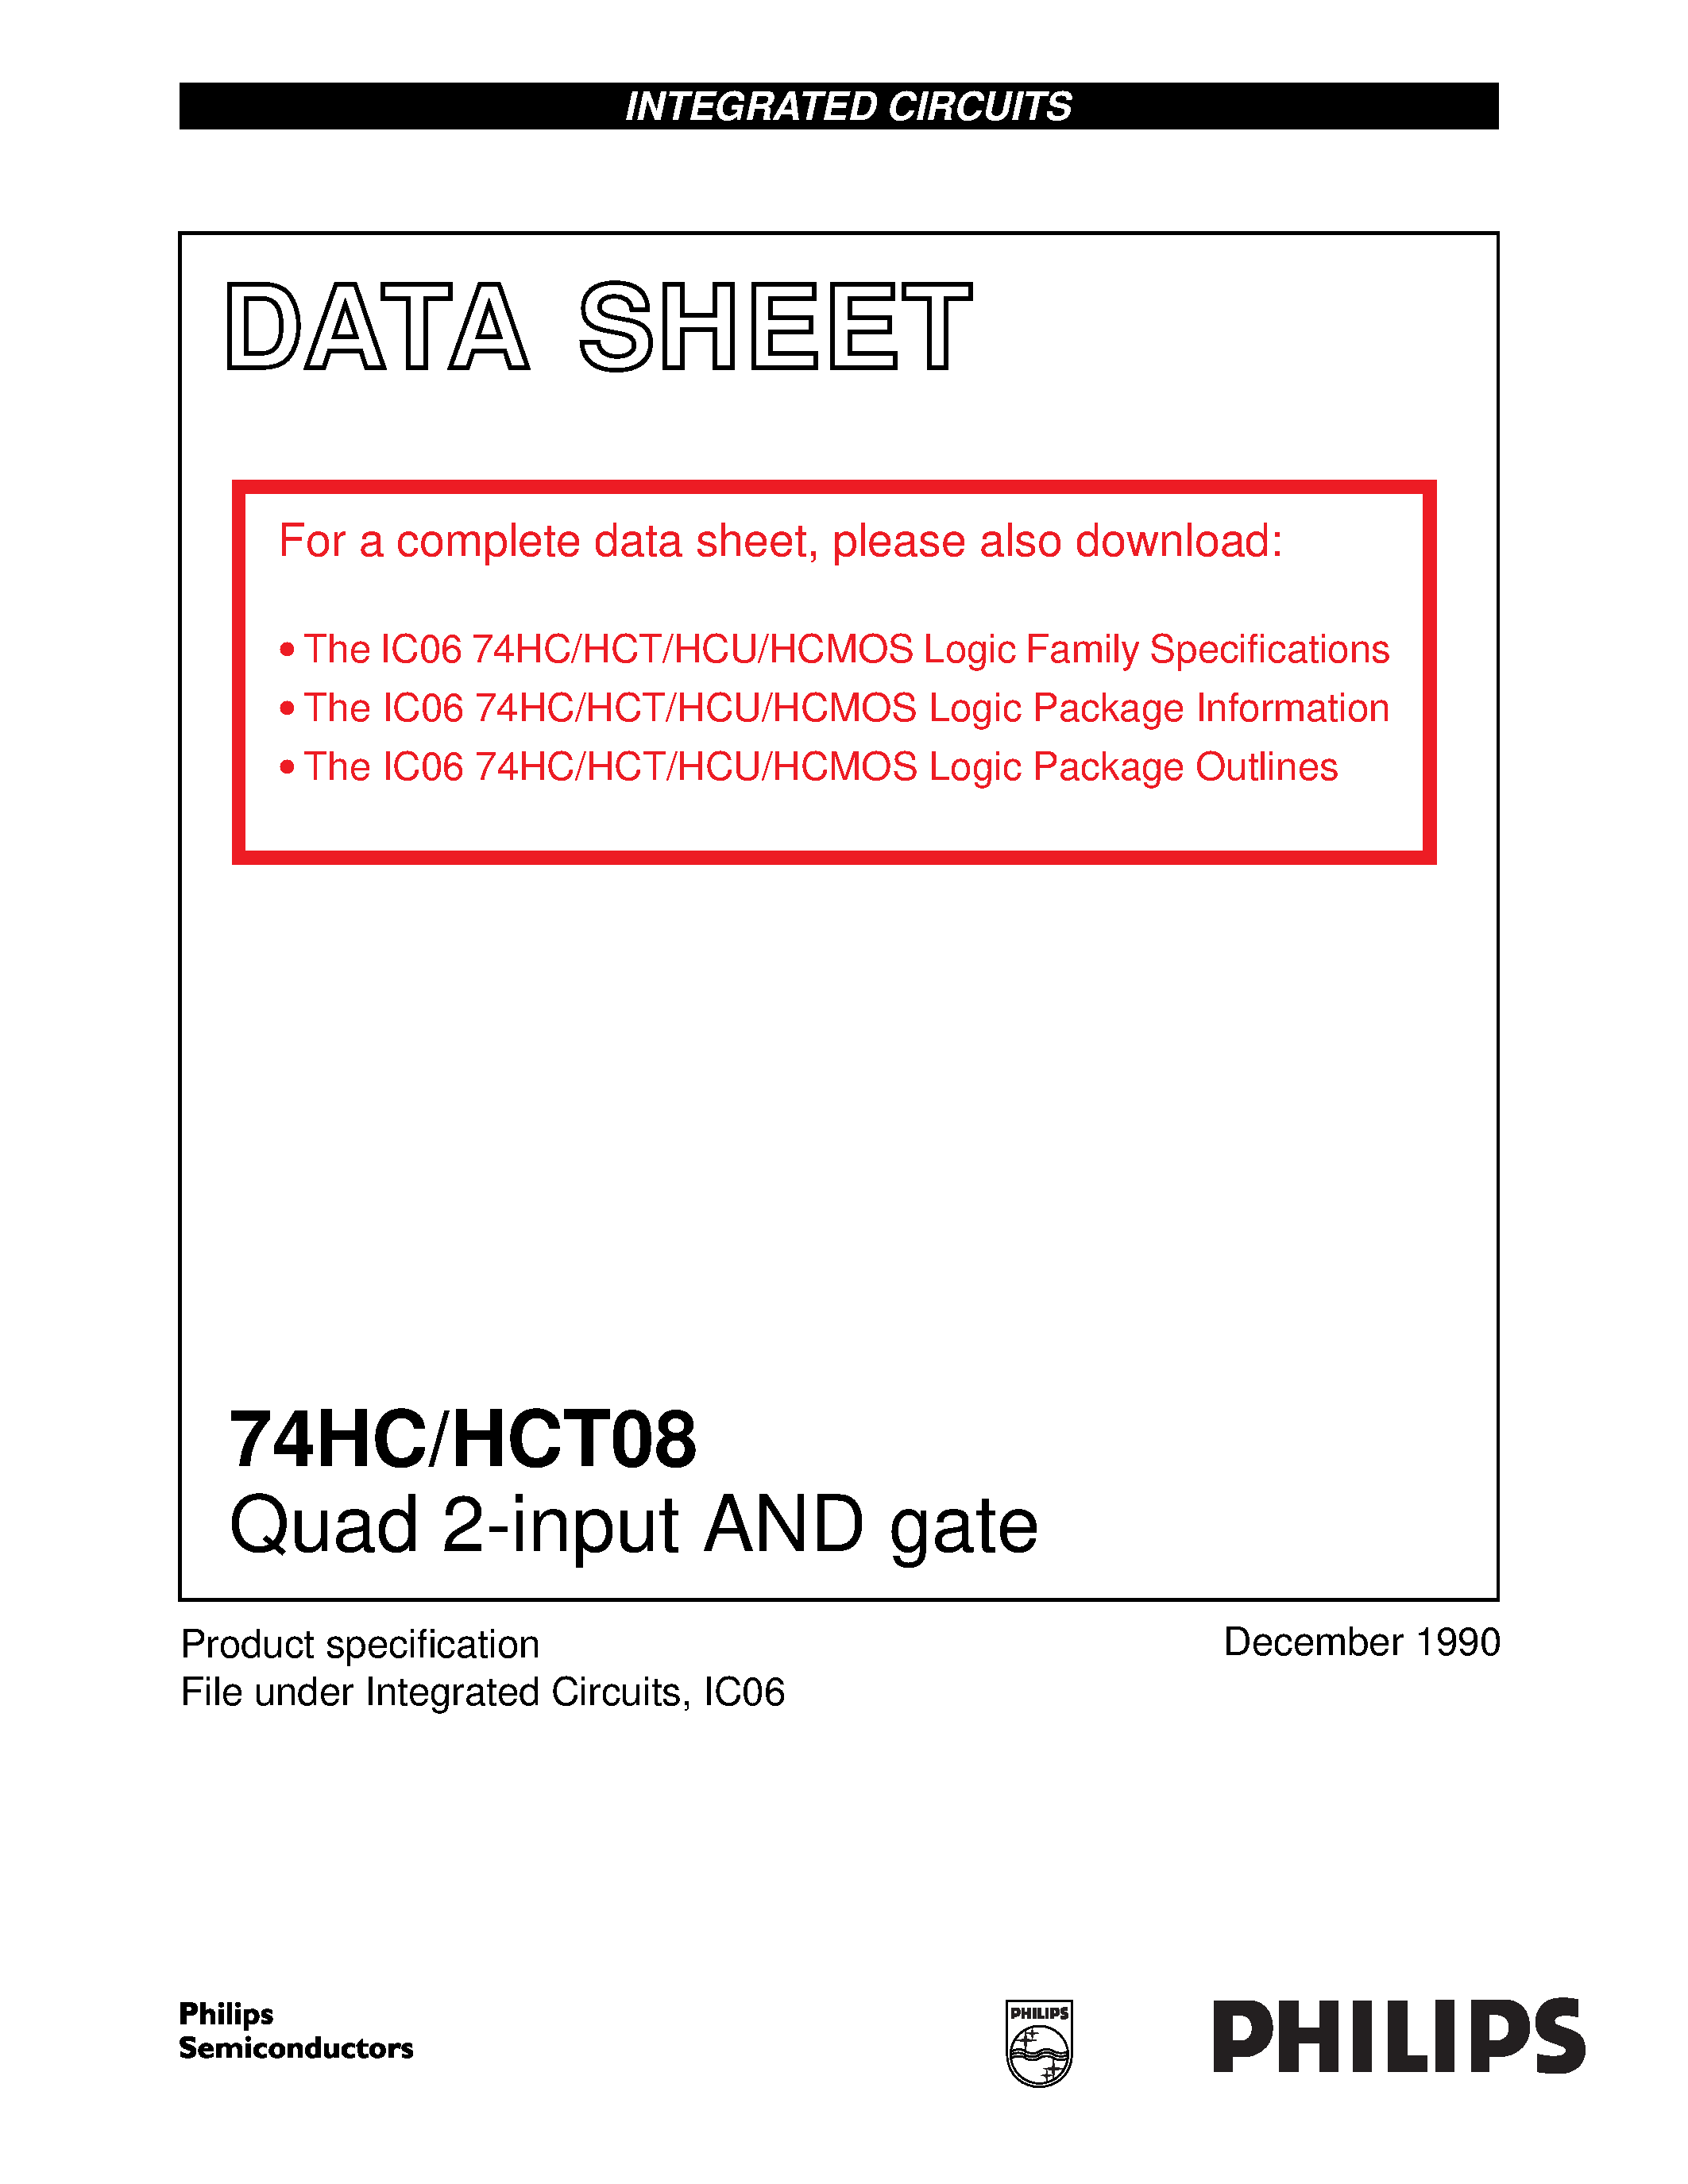 Даташит 74HCT08 - Quad 2-input AND gate страница 1